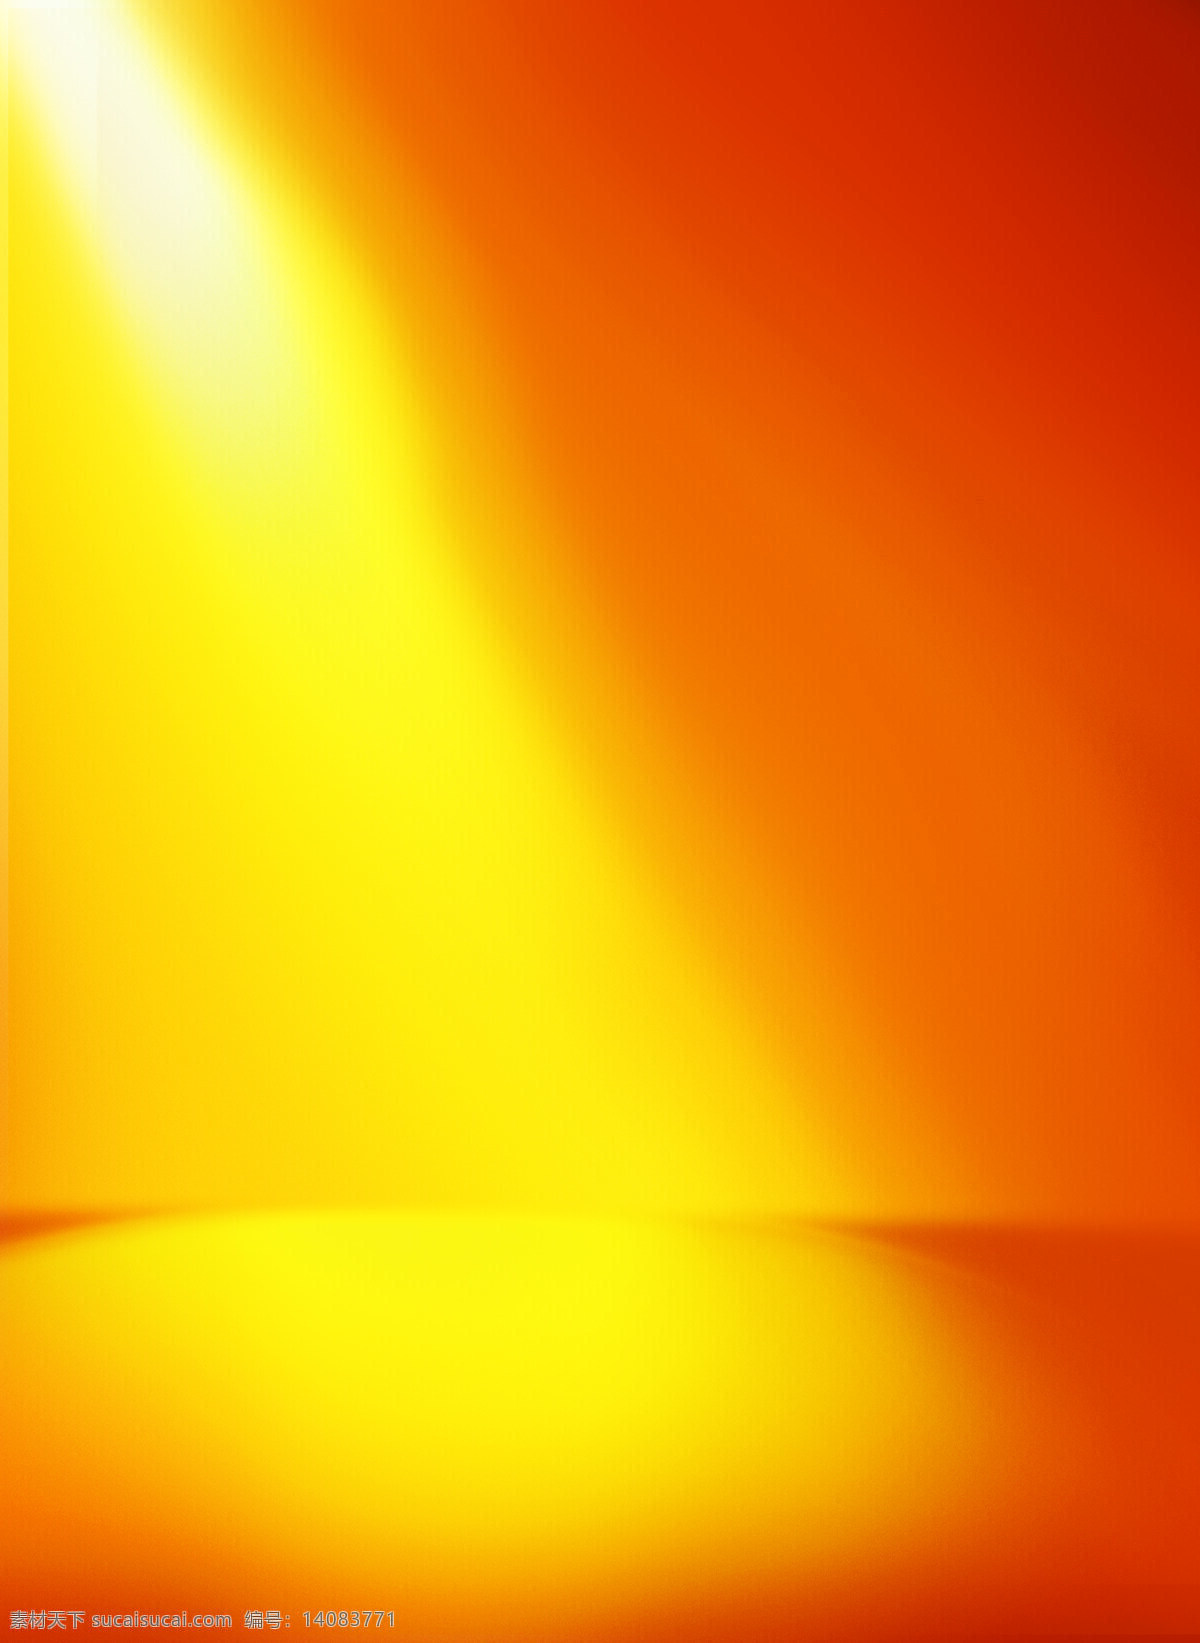 打光背景 橙色 黄色 发光 阴影 弧线 打光 投影 背景图 底图 分层 暖色背胶 产品背景 活动背景 淘宝界面设计 淘宝装修模板